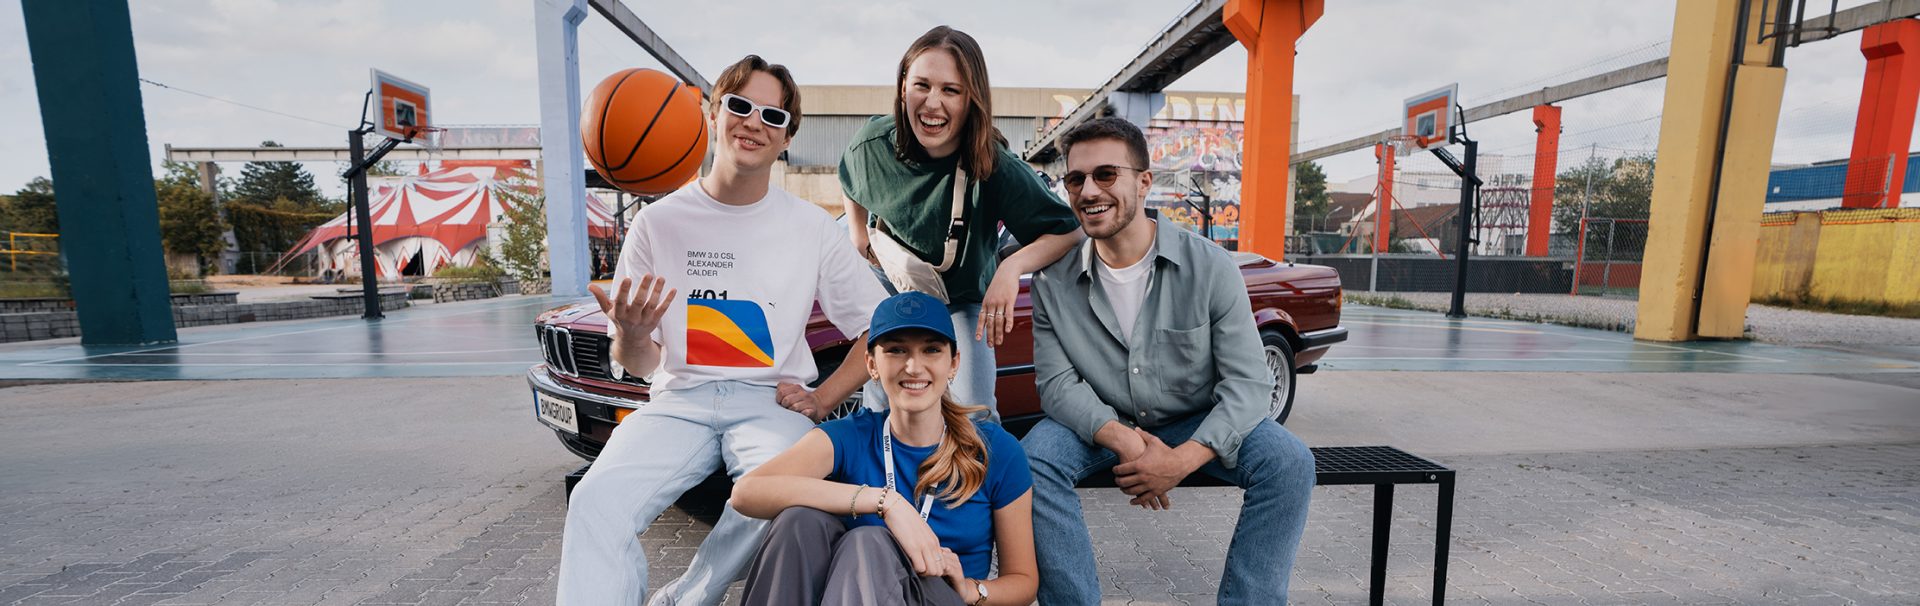 Vier Auszubildende mit einem BMW Oldtimer auf einem urbanen Basketballplatz